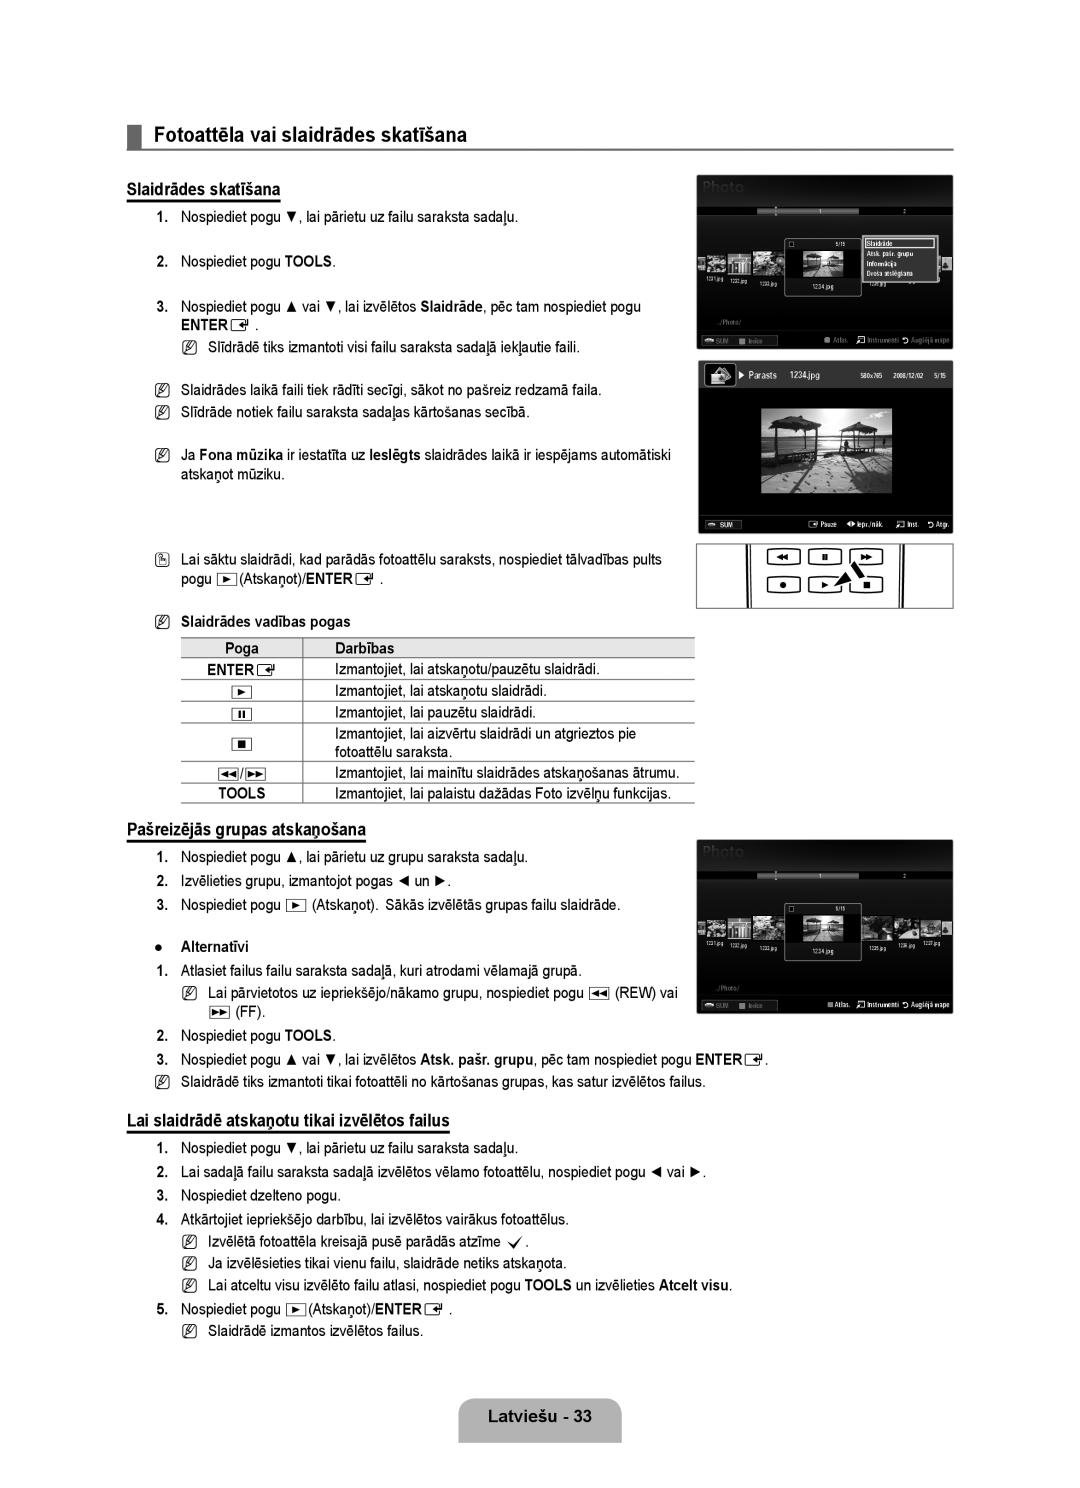 Samsung UE46B6000VWXXC manual Fotoattēla vai slaidrādes skatīšana, Slaidrādes skatīšana, Pašreizējās grupas atskaņošana 